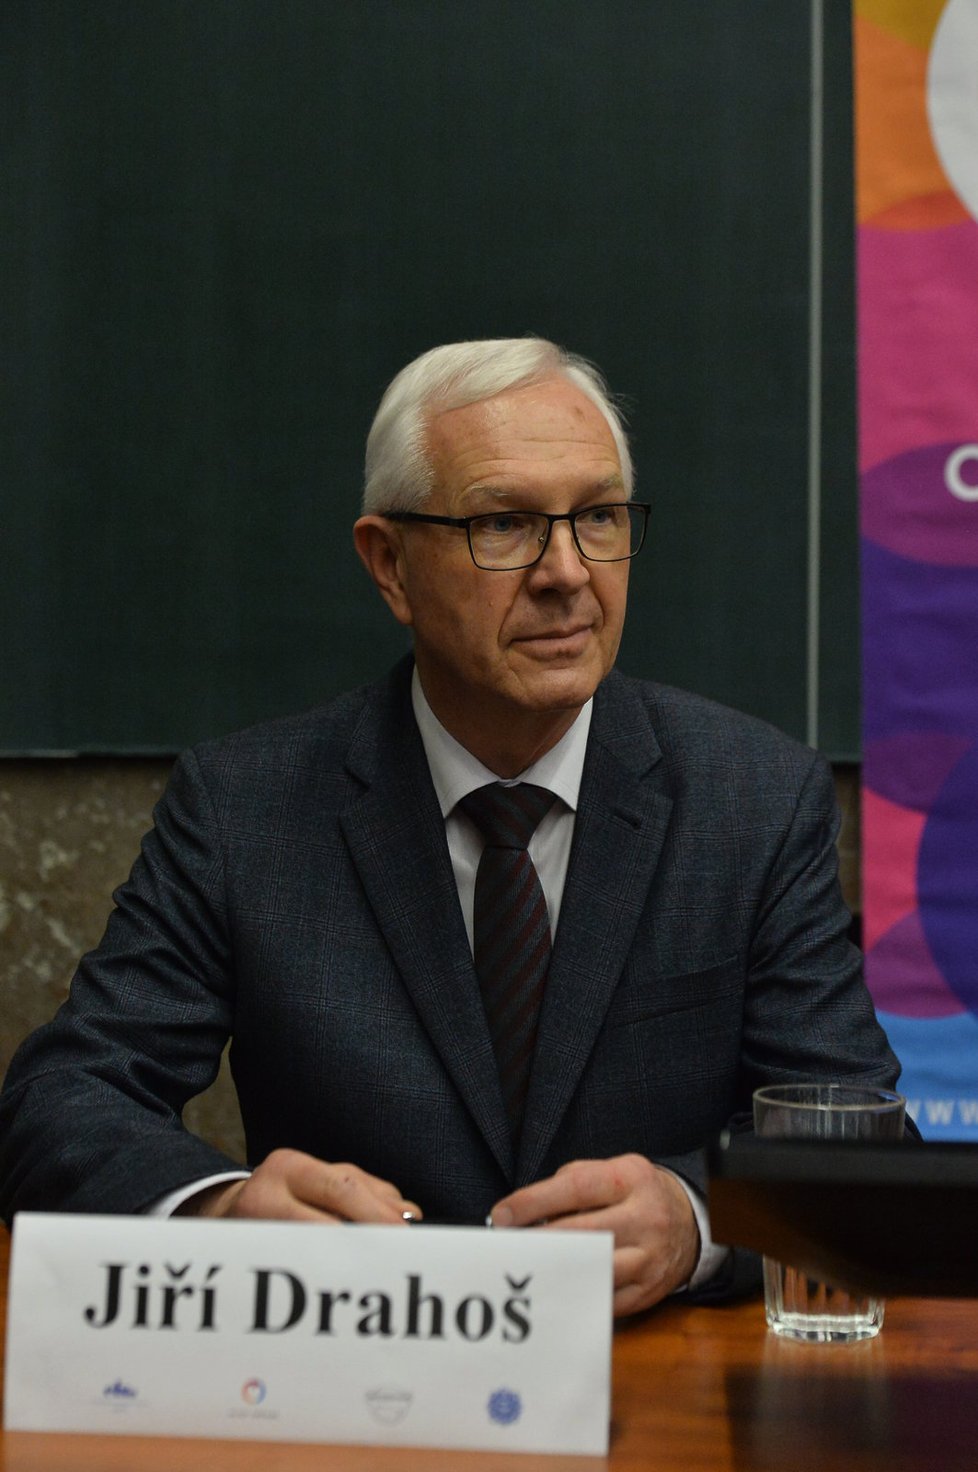 Prezidentský kandidát Jiří Drahoš se obává toho, že výsledky voleb v České republice ovlivňují zahraniční tajné služby prostřednictvím dezinformací